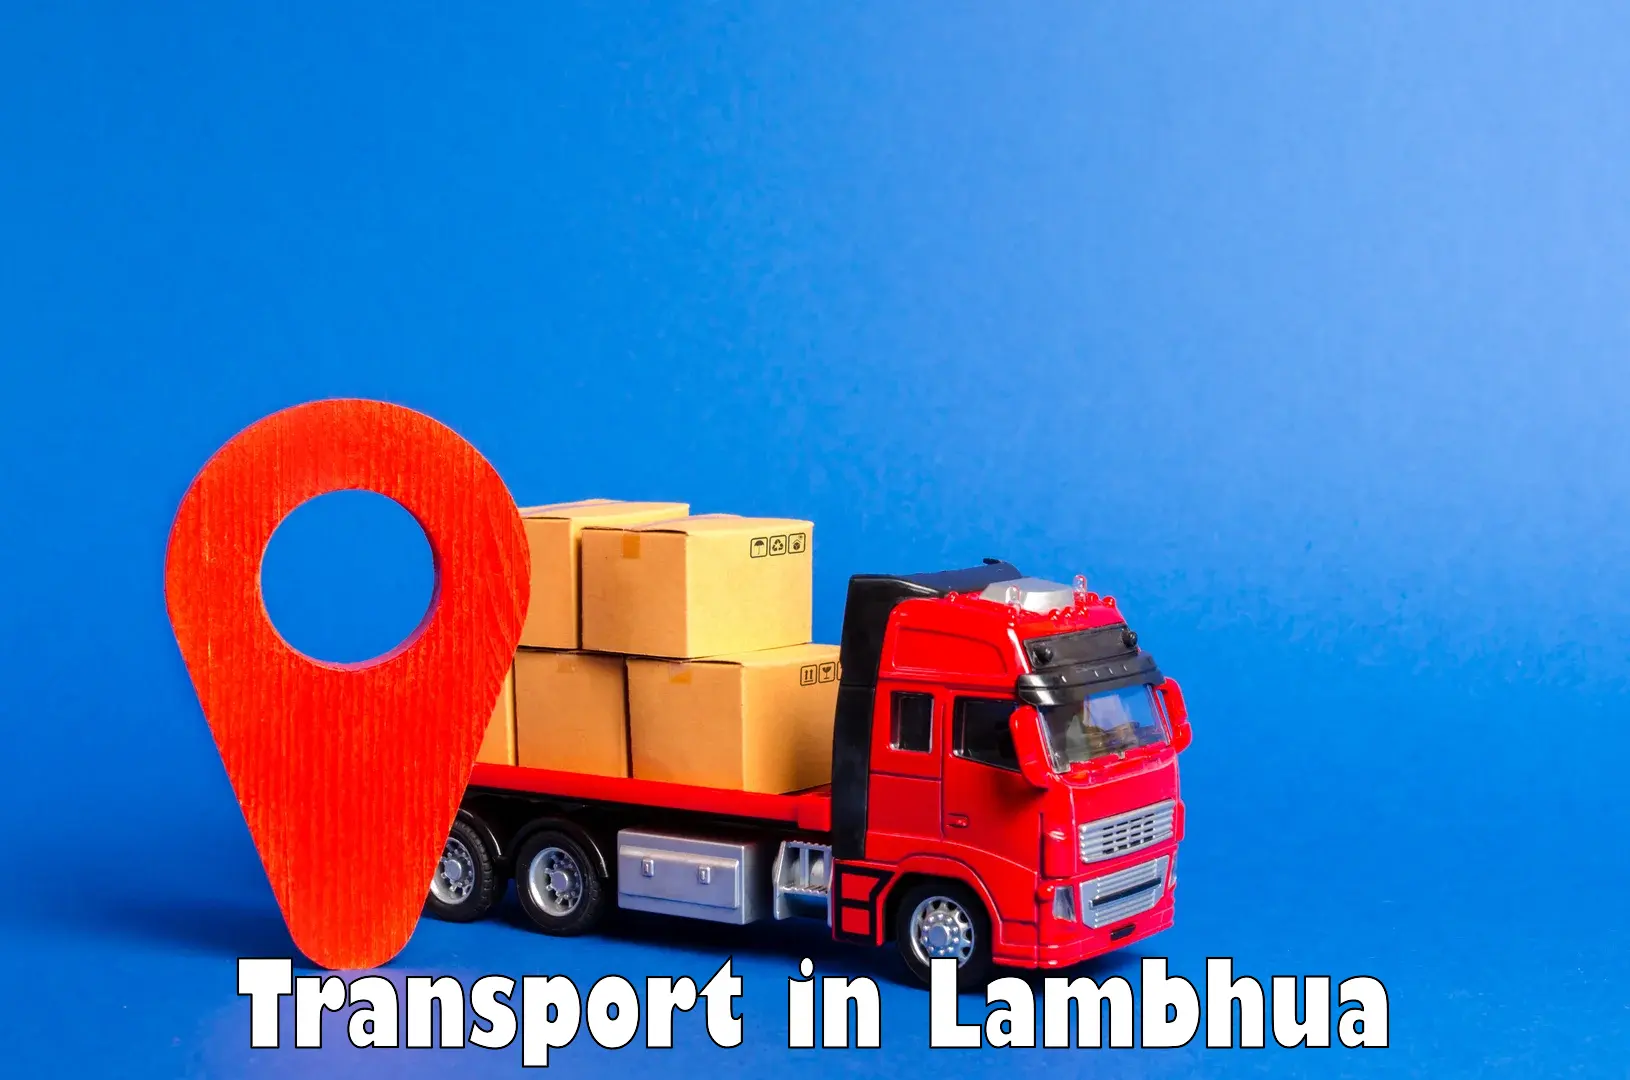 Container transportation services in Lambhua